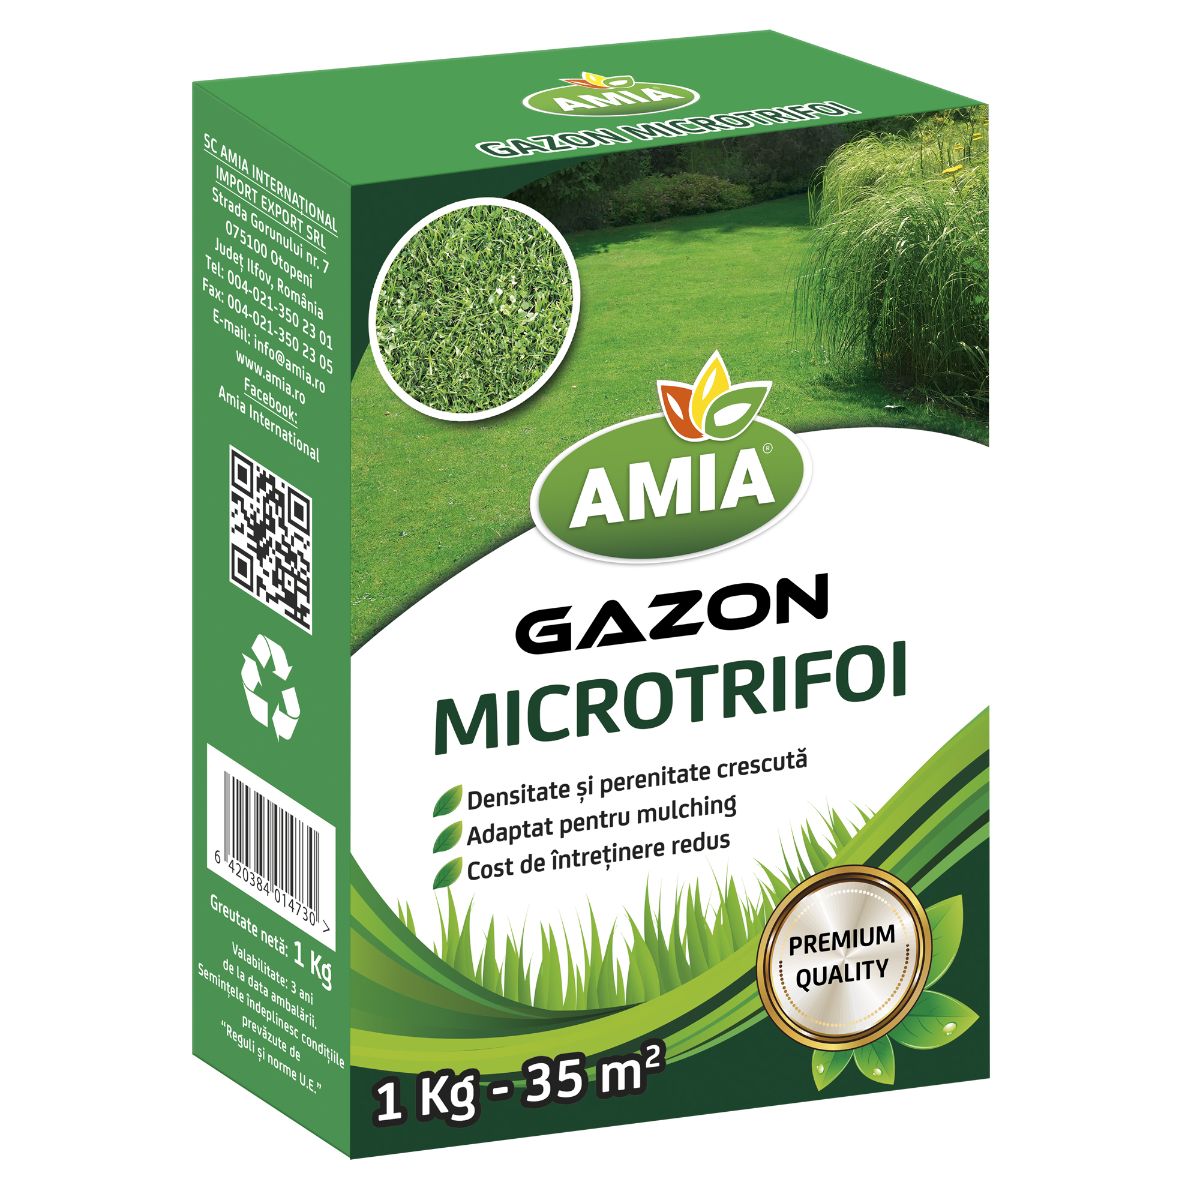 Seminte gazon - Seminte Gazon MICROTRIFOI AMIA 1 Kg, hectarul.ro